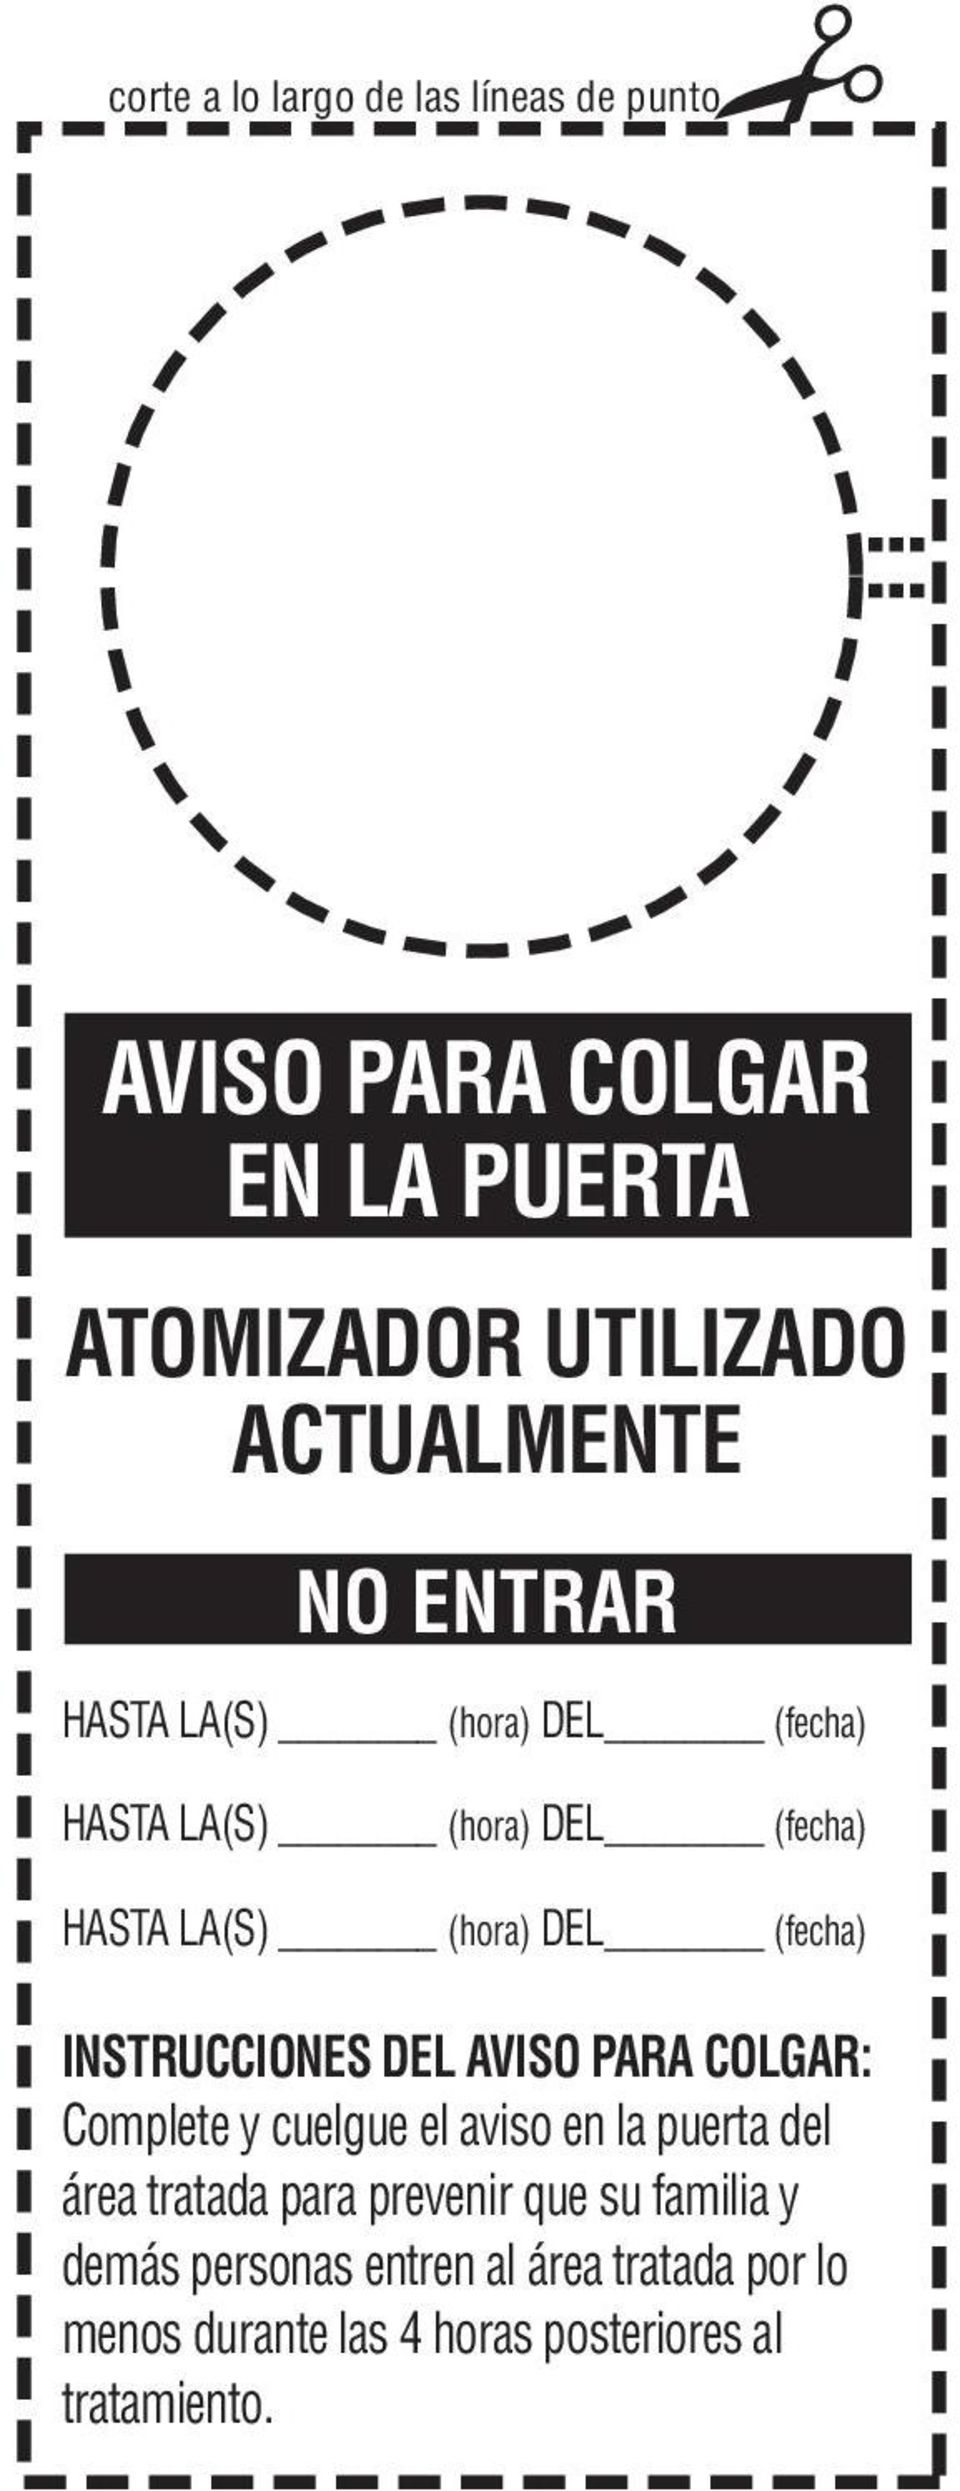 INSTRUCCIONES DEL AVISO PARA COLGAR: Complete y cuelgue el aviso en la puerta del área tratada para